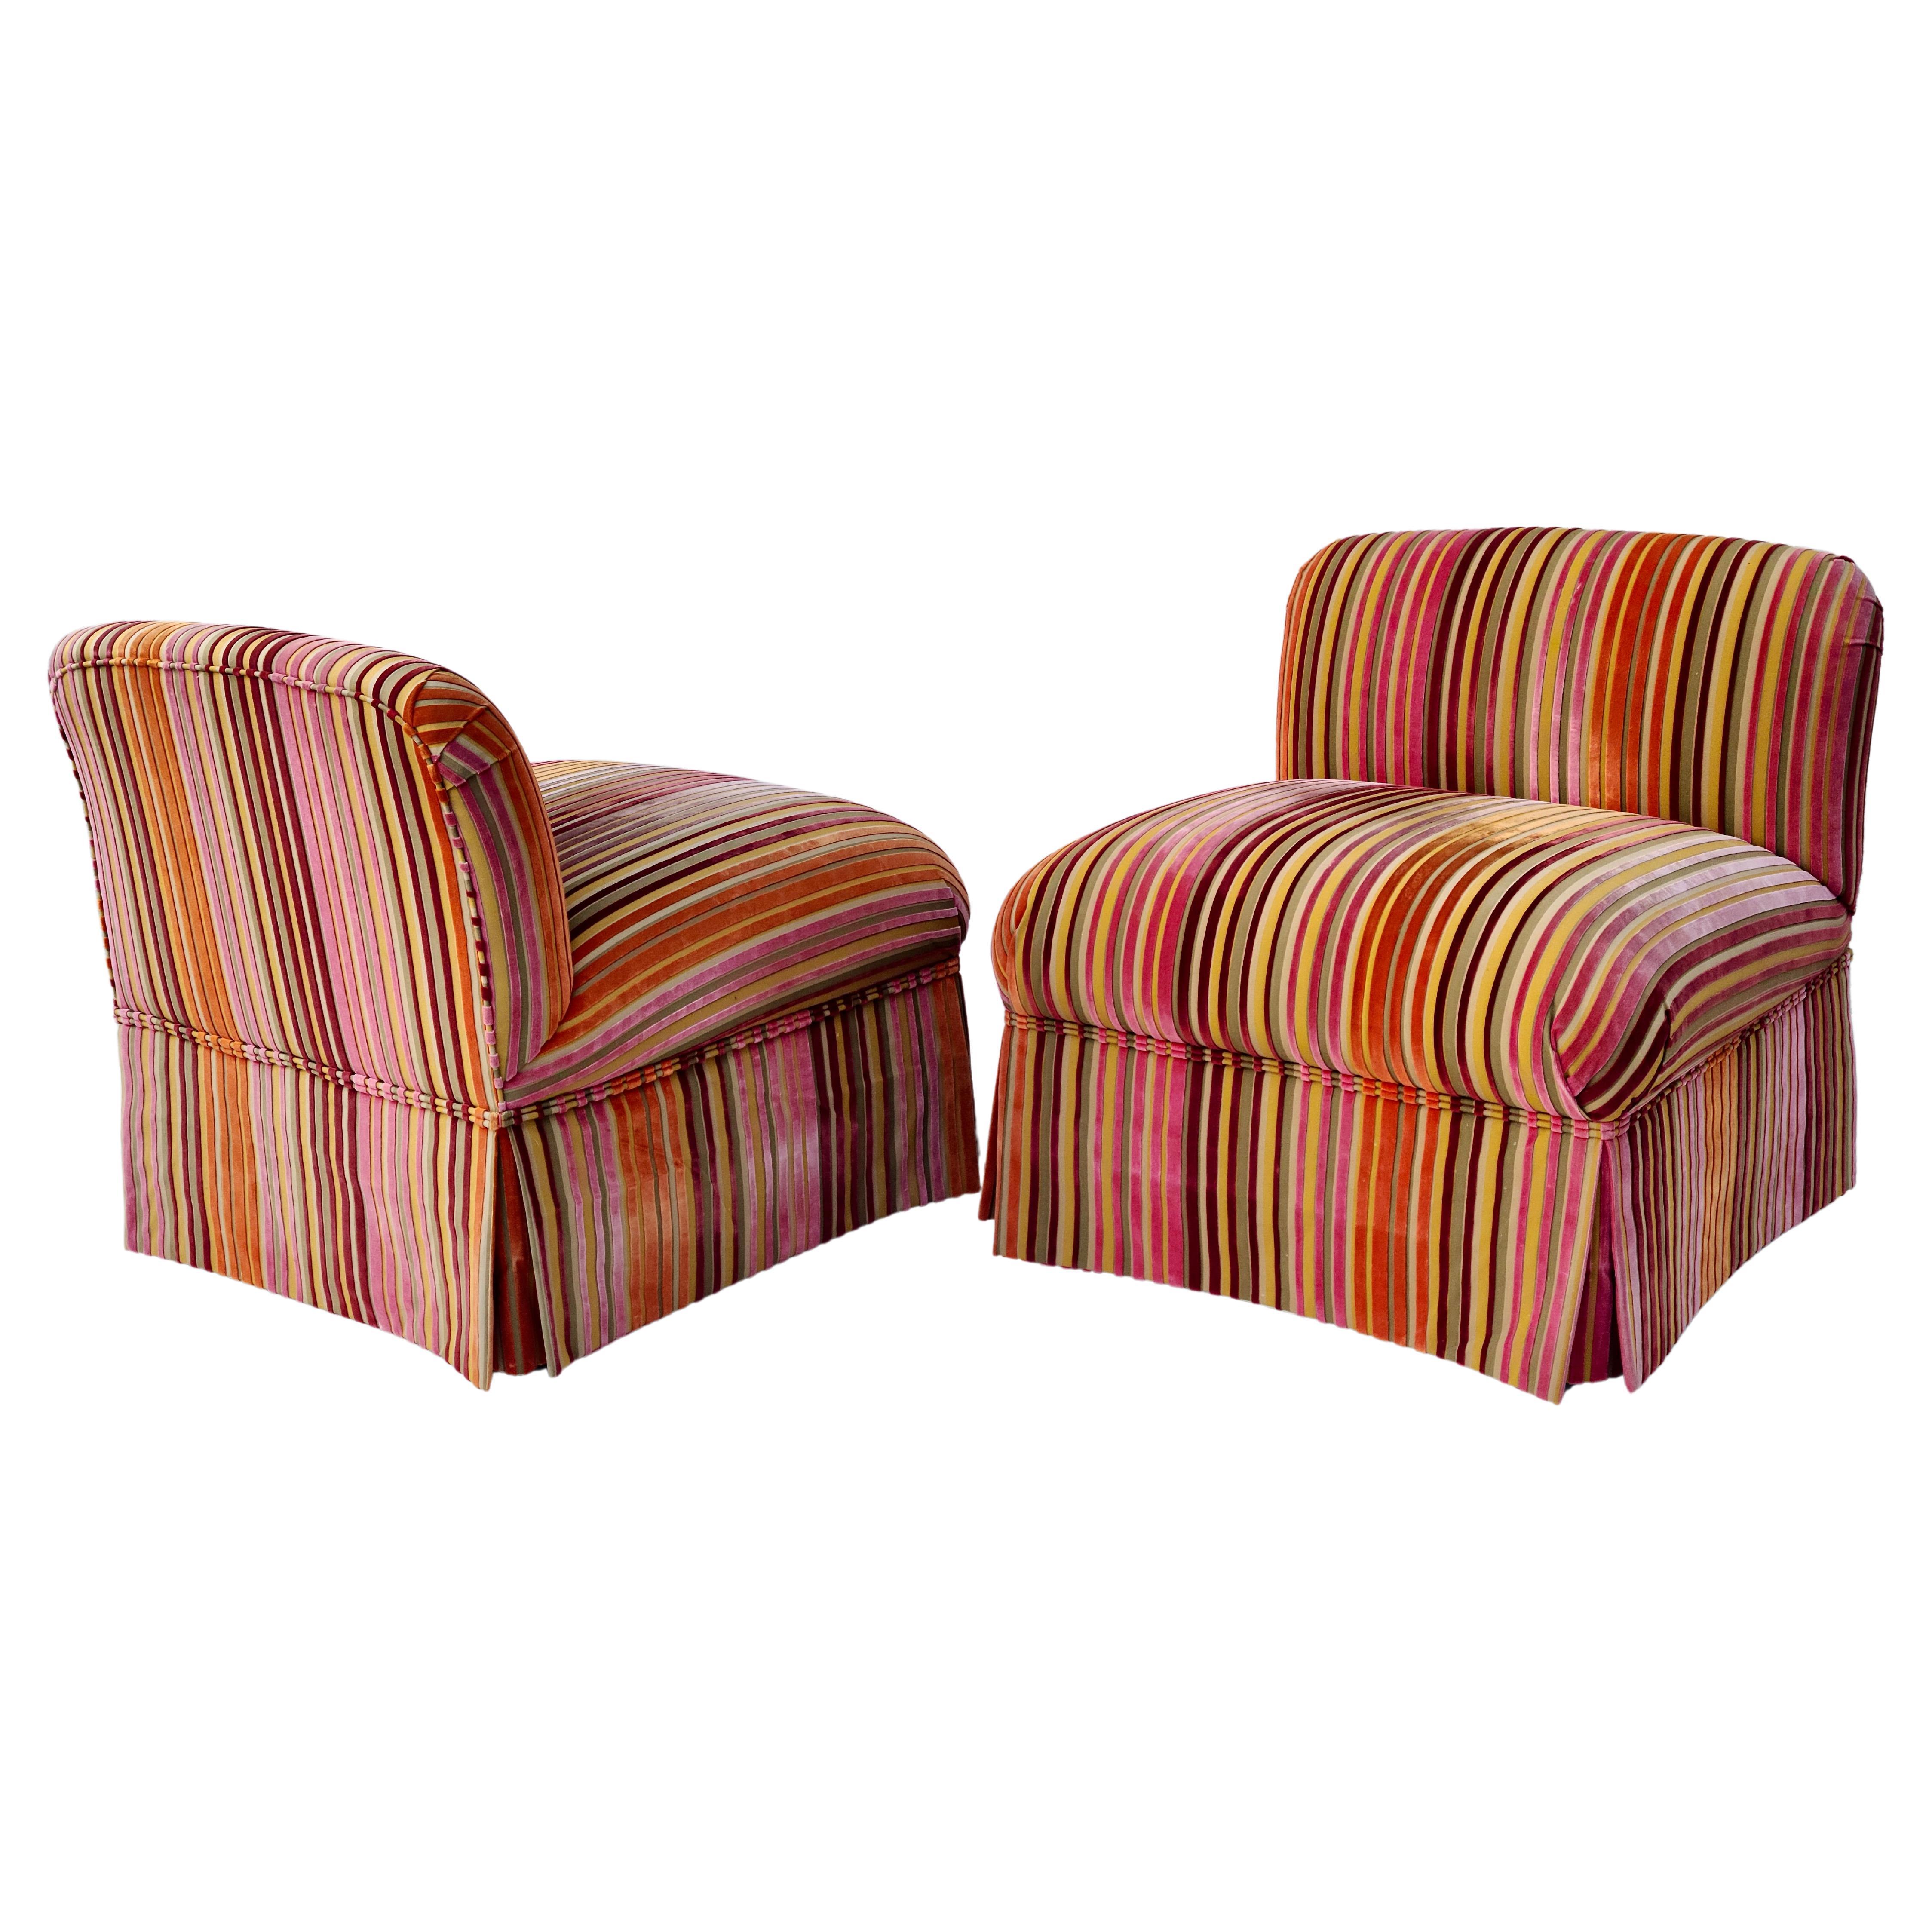 Pair Modern Slipper Chairs

Dimensional Velvet Striped Fabric.

